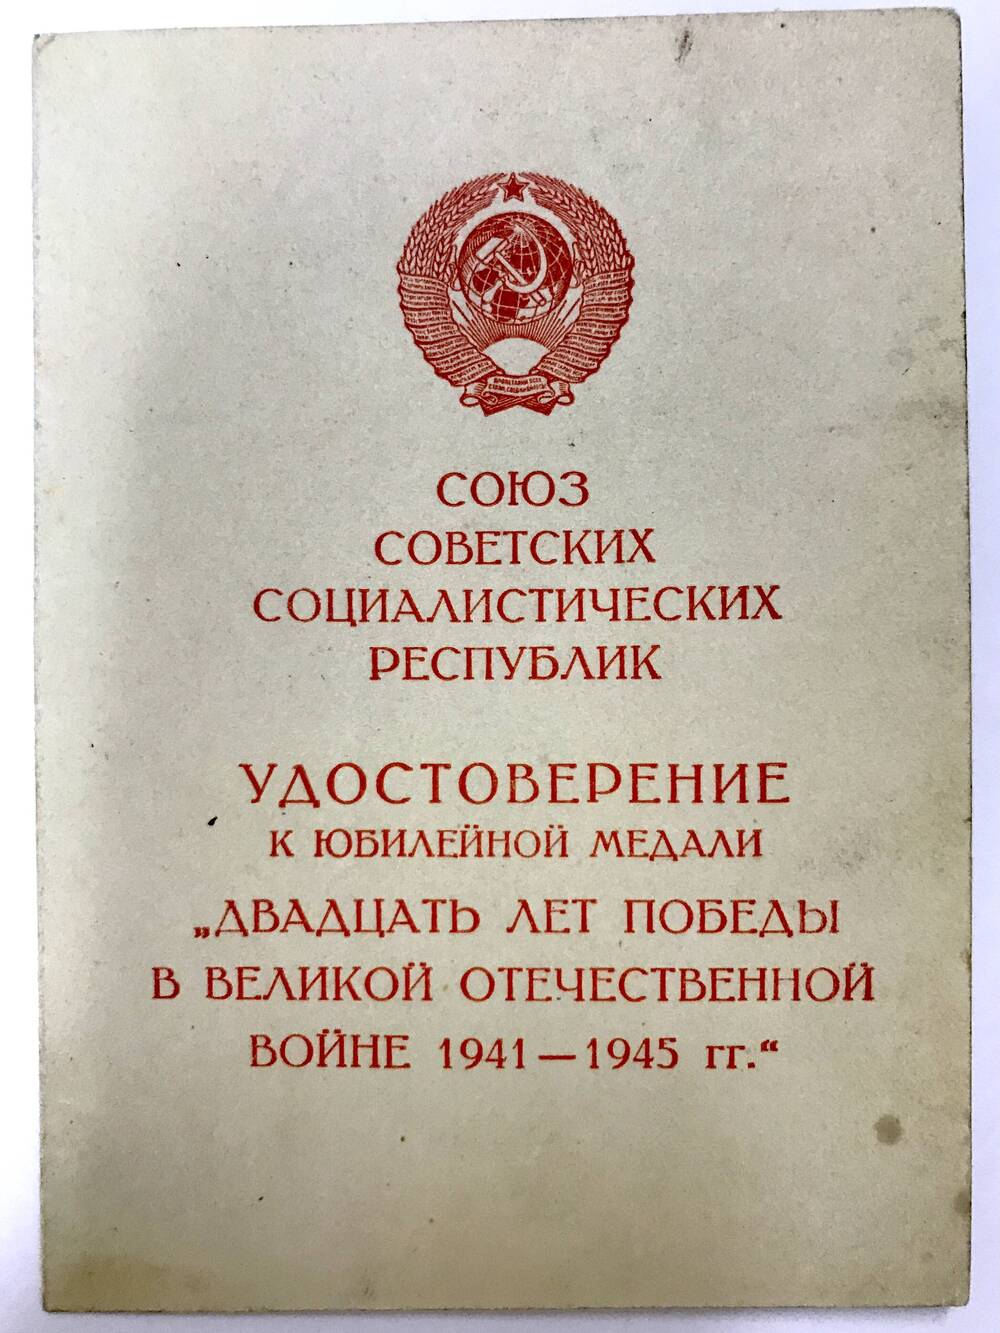 Удостоверение Стурова Т.С. к юбилейной медали «Двадцать лет Победы в Великой Отечественной войне» 26 марта 1966г.